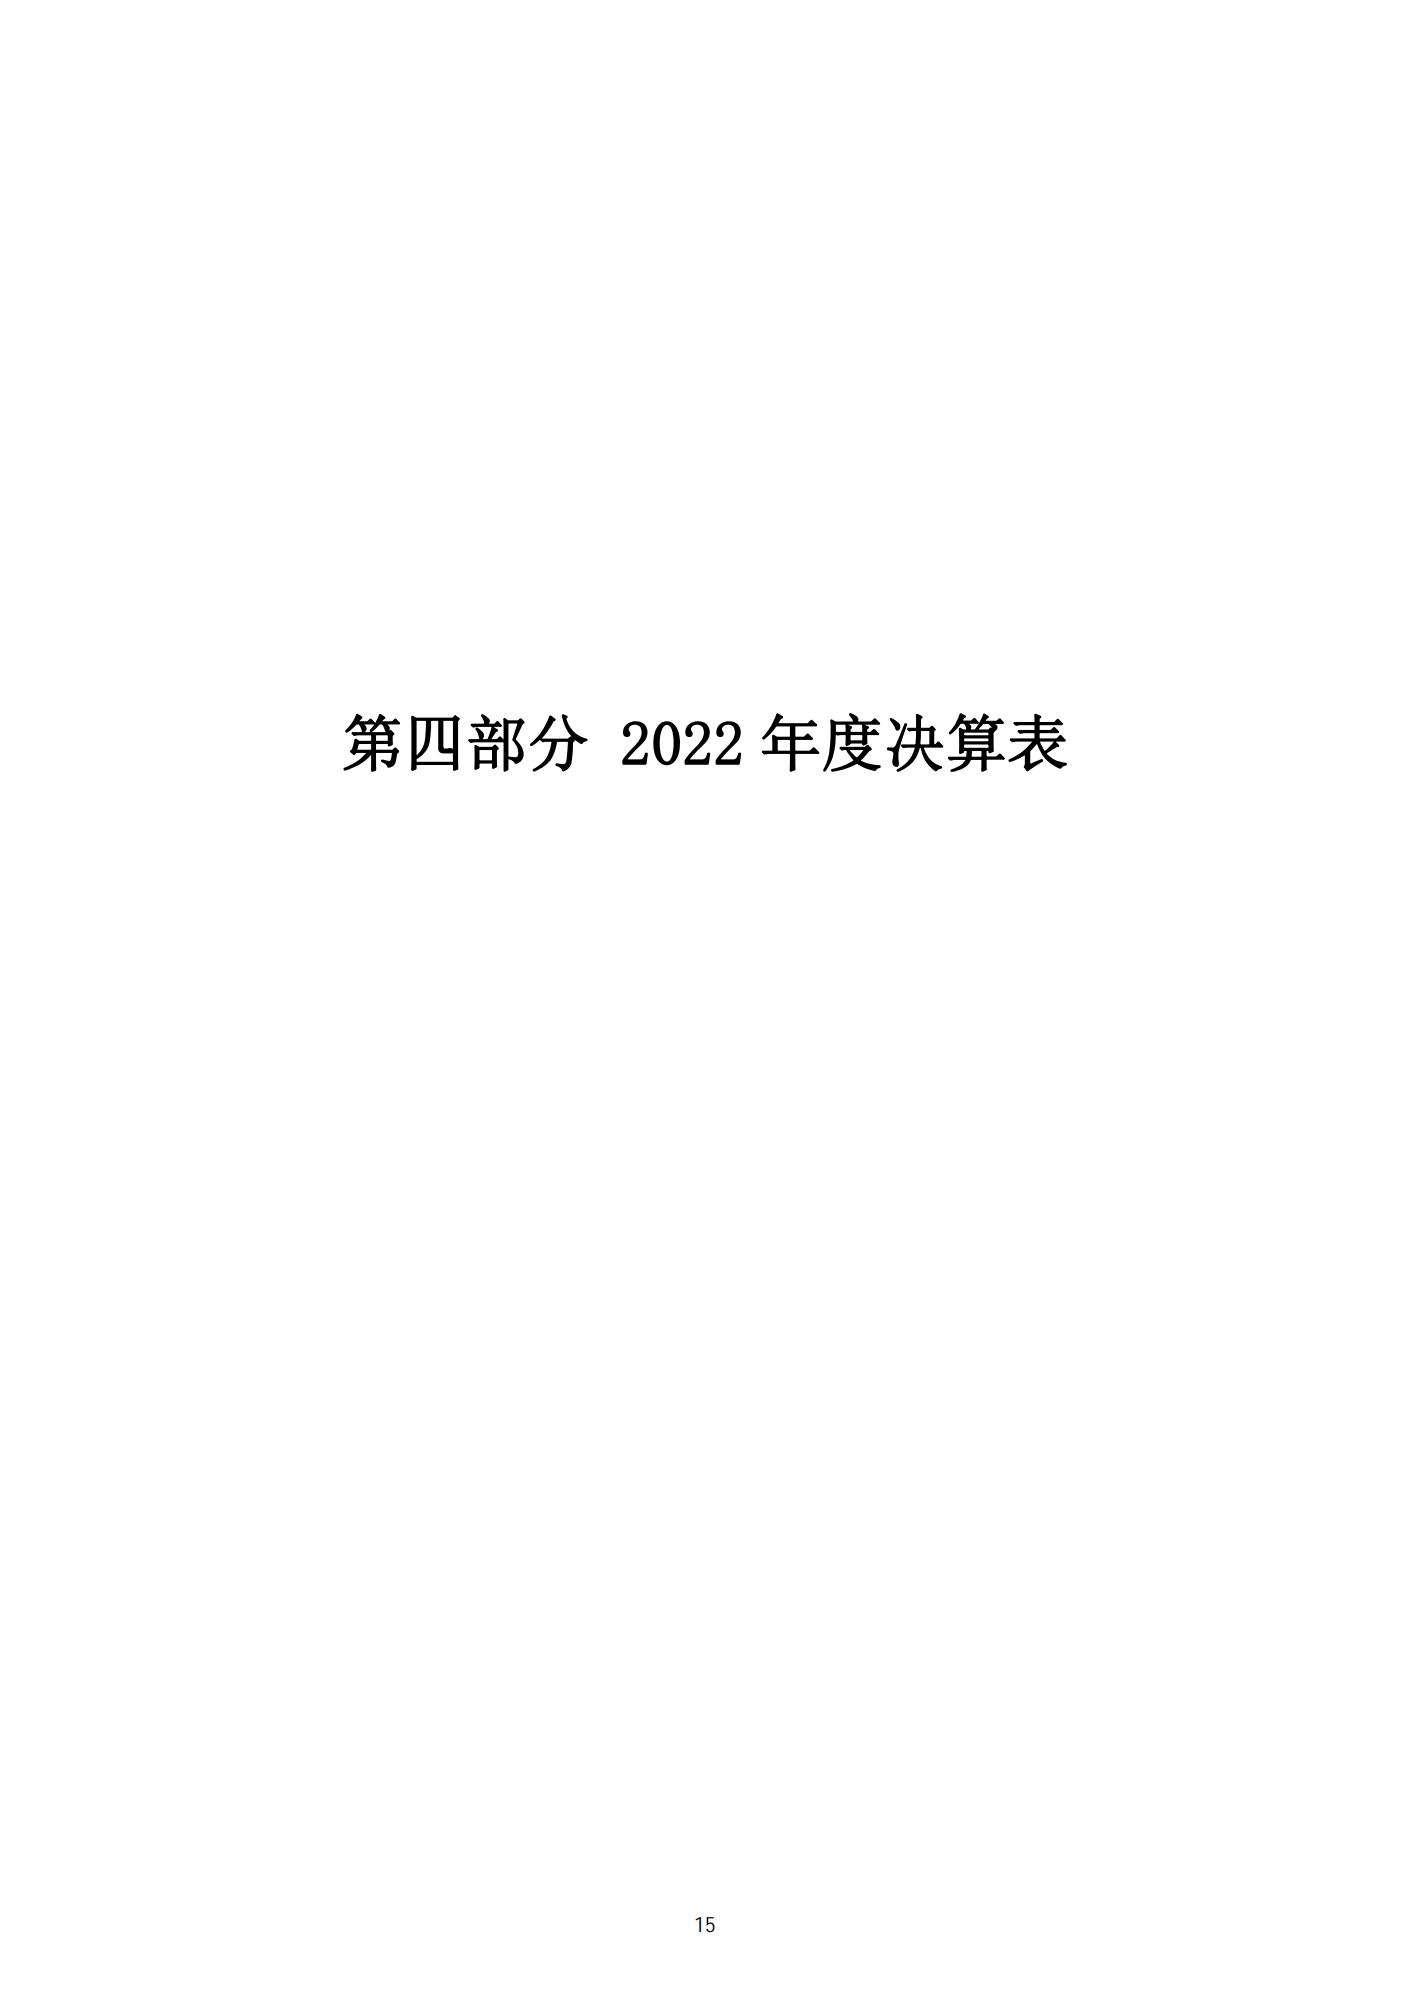 2022年决算公开-美术馆0929_14.jpg